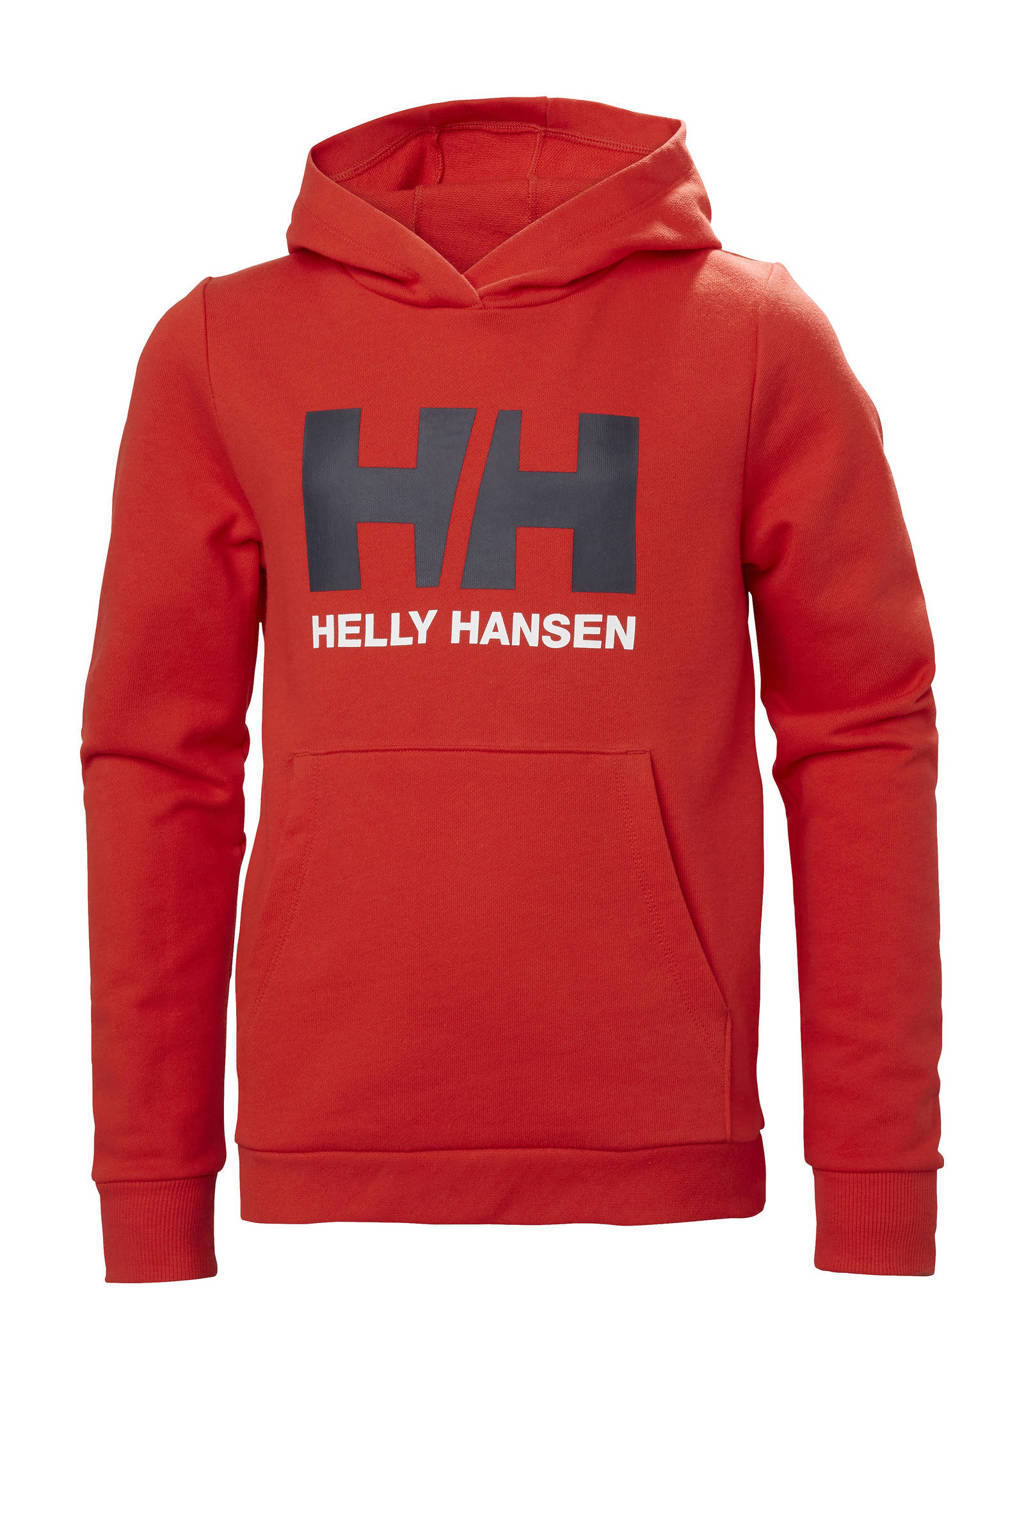 Rode heren Helly Hansen hoodie Box van katoen met printopdruk, lange mouwen, capuchon en geribde boorden